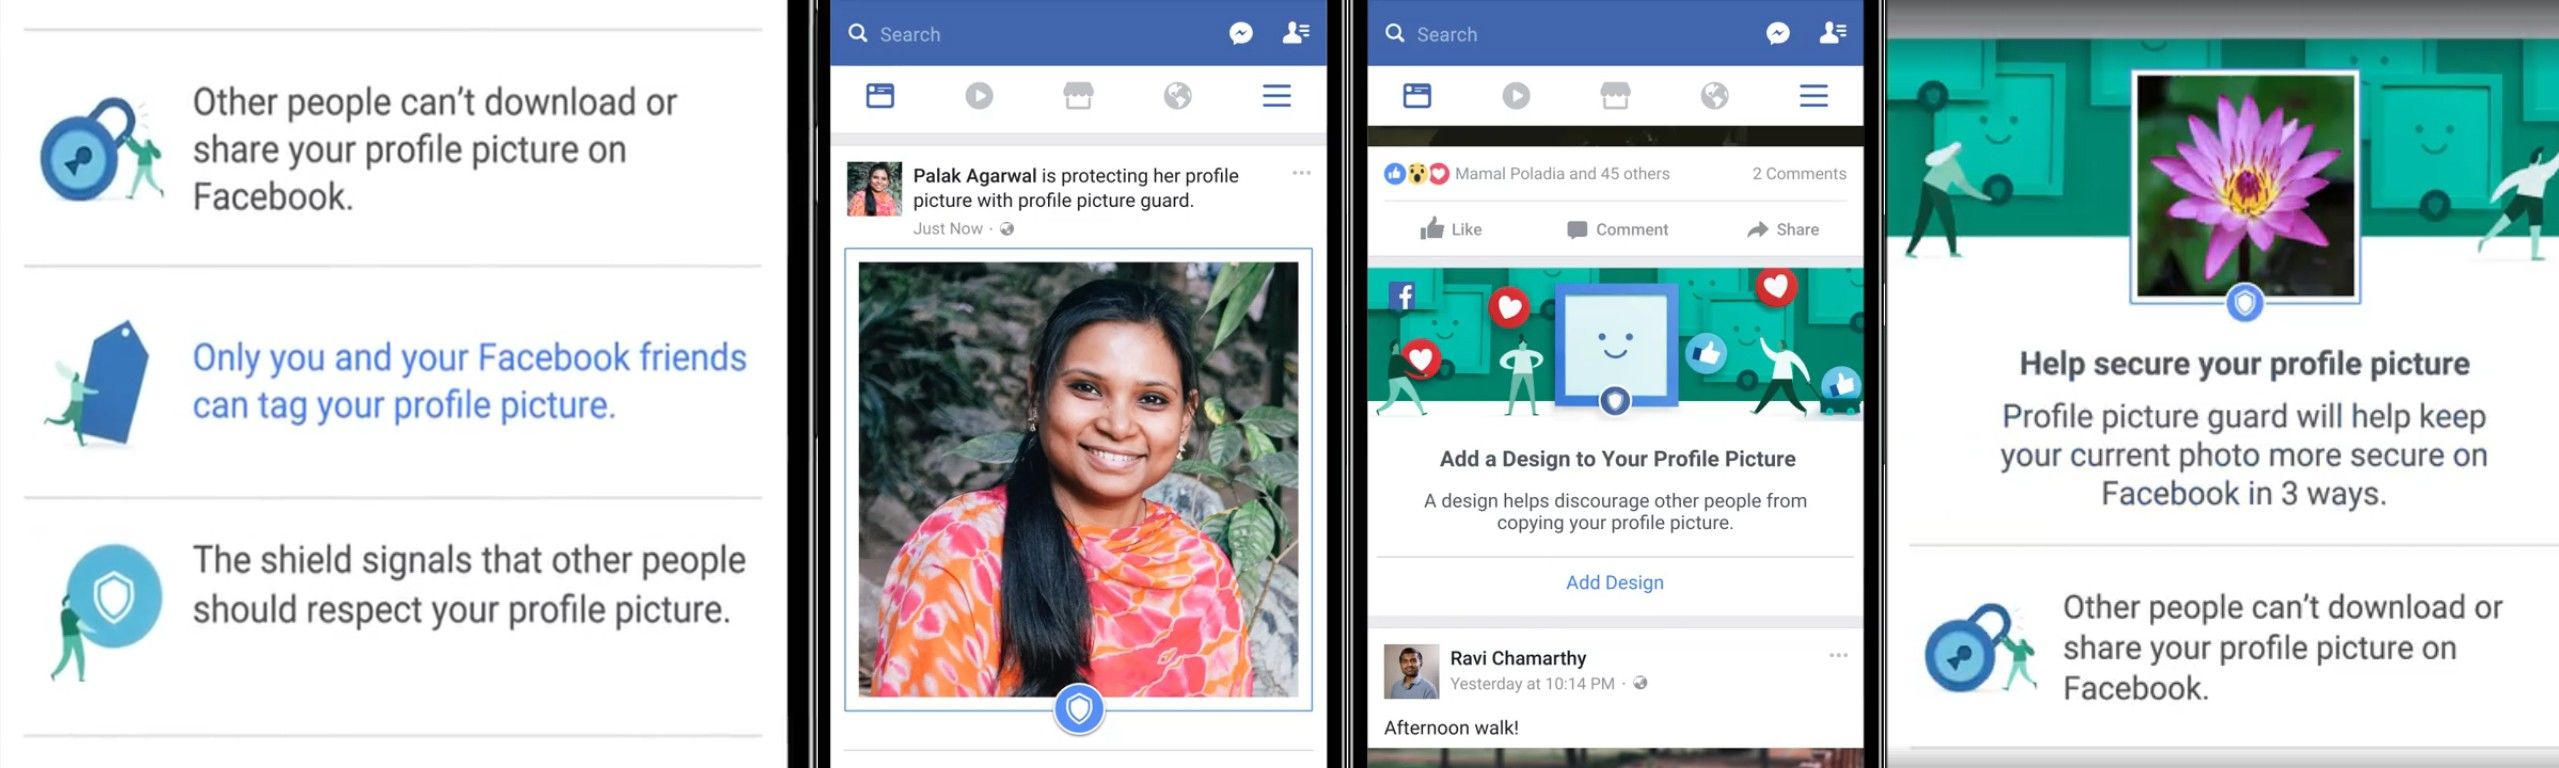 फ़ेसबुक का नया अपडेट, महिलाओं की फोटो रहेगी एकदम सेफ, मुख्यमंत्री ने दी बधाई